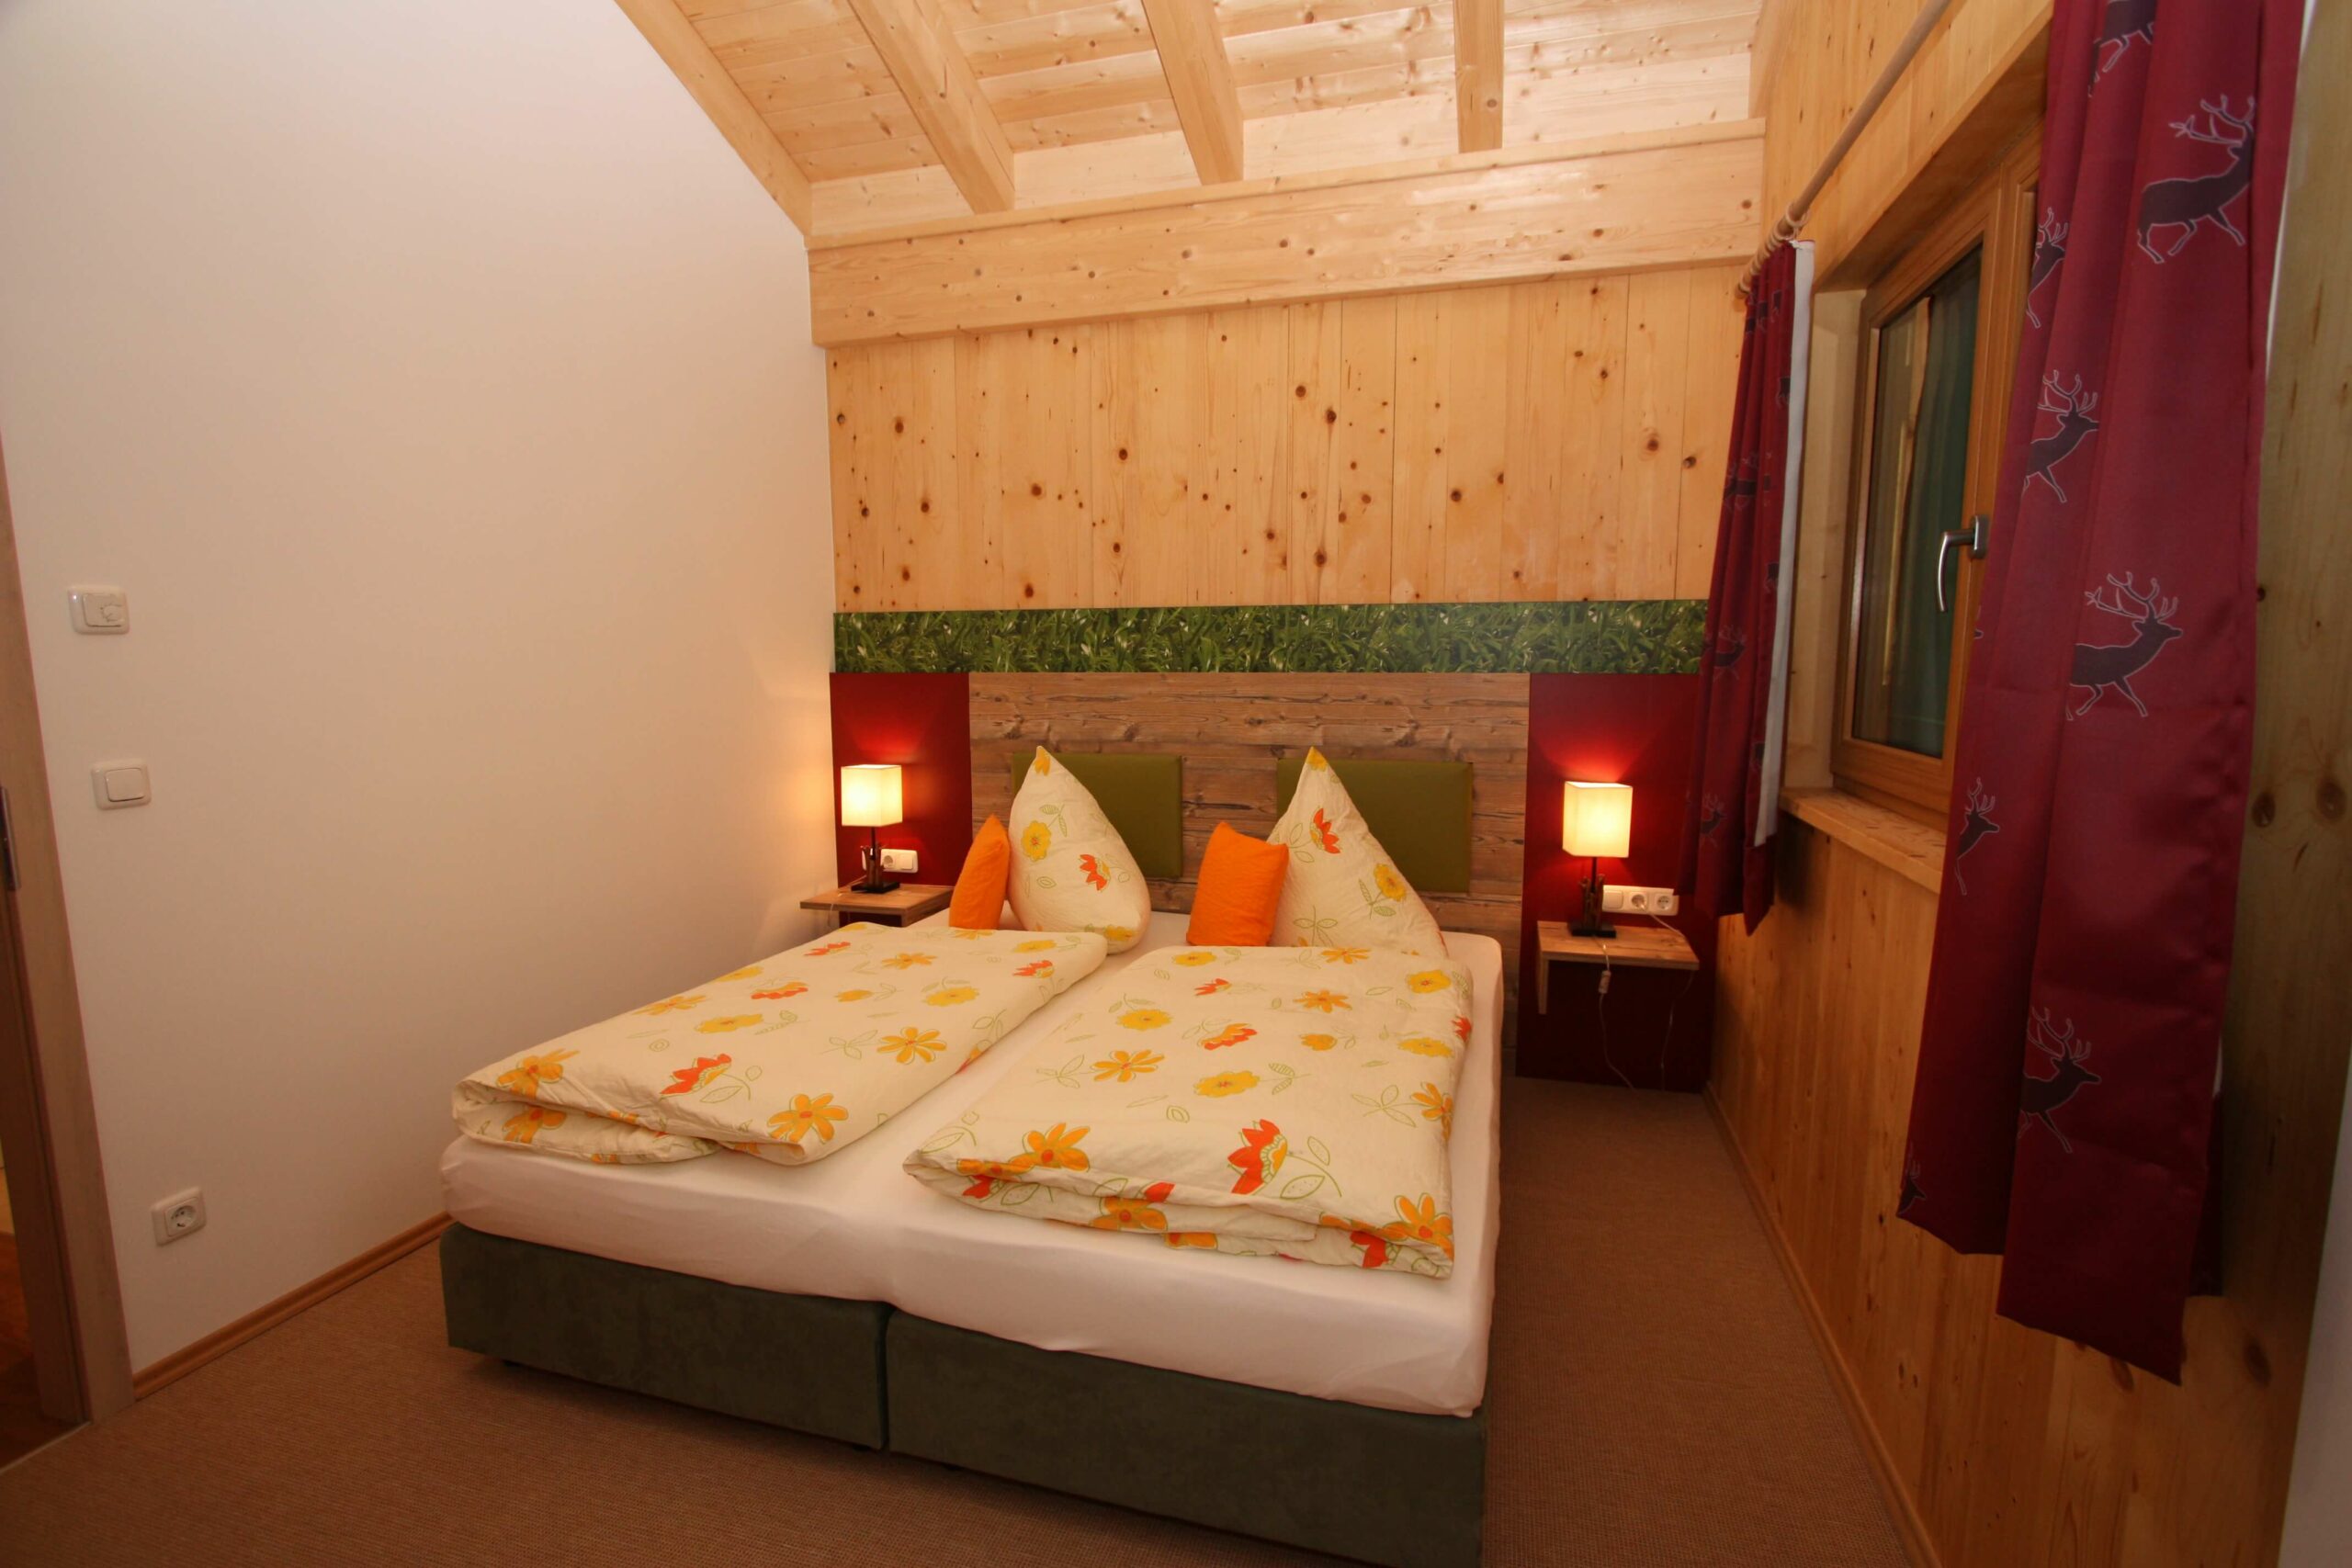 Schlafzimmer in der Ferienwohnung des Hotel Garni Almenrausch und Edelweiß in Garmisch-Patenkirchen